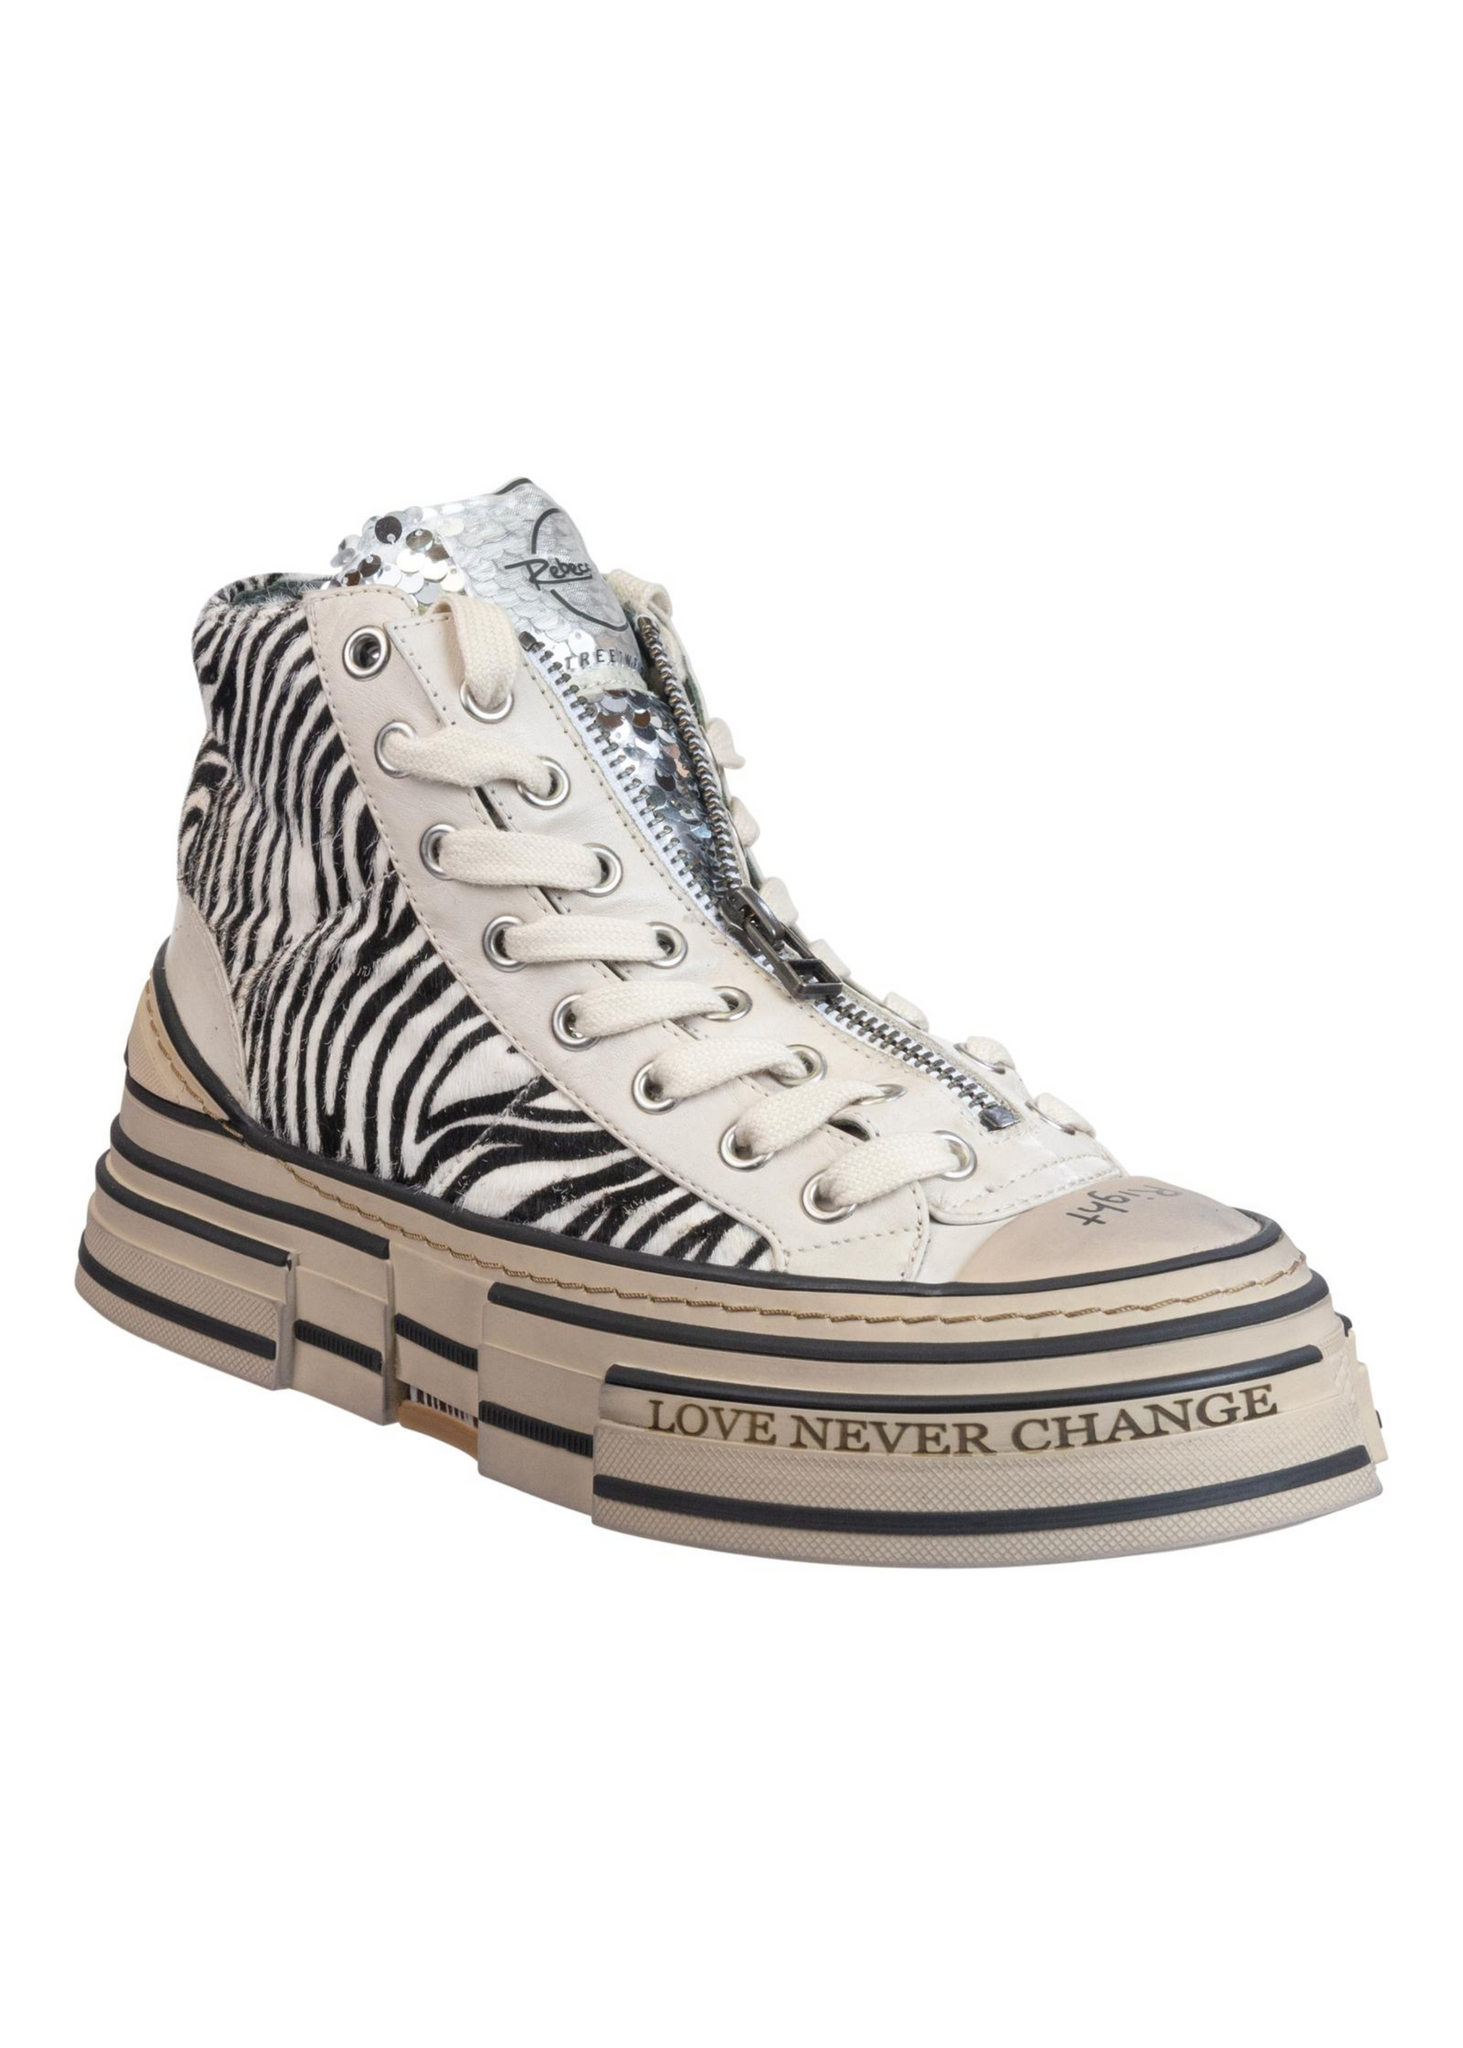 Divergent Sneakers in Zebra